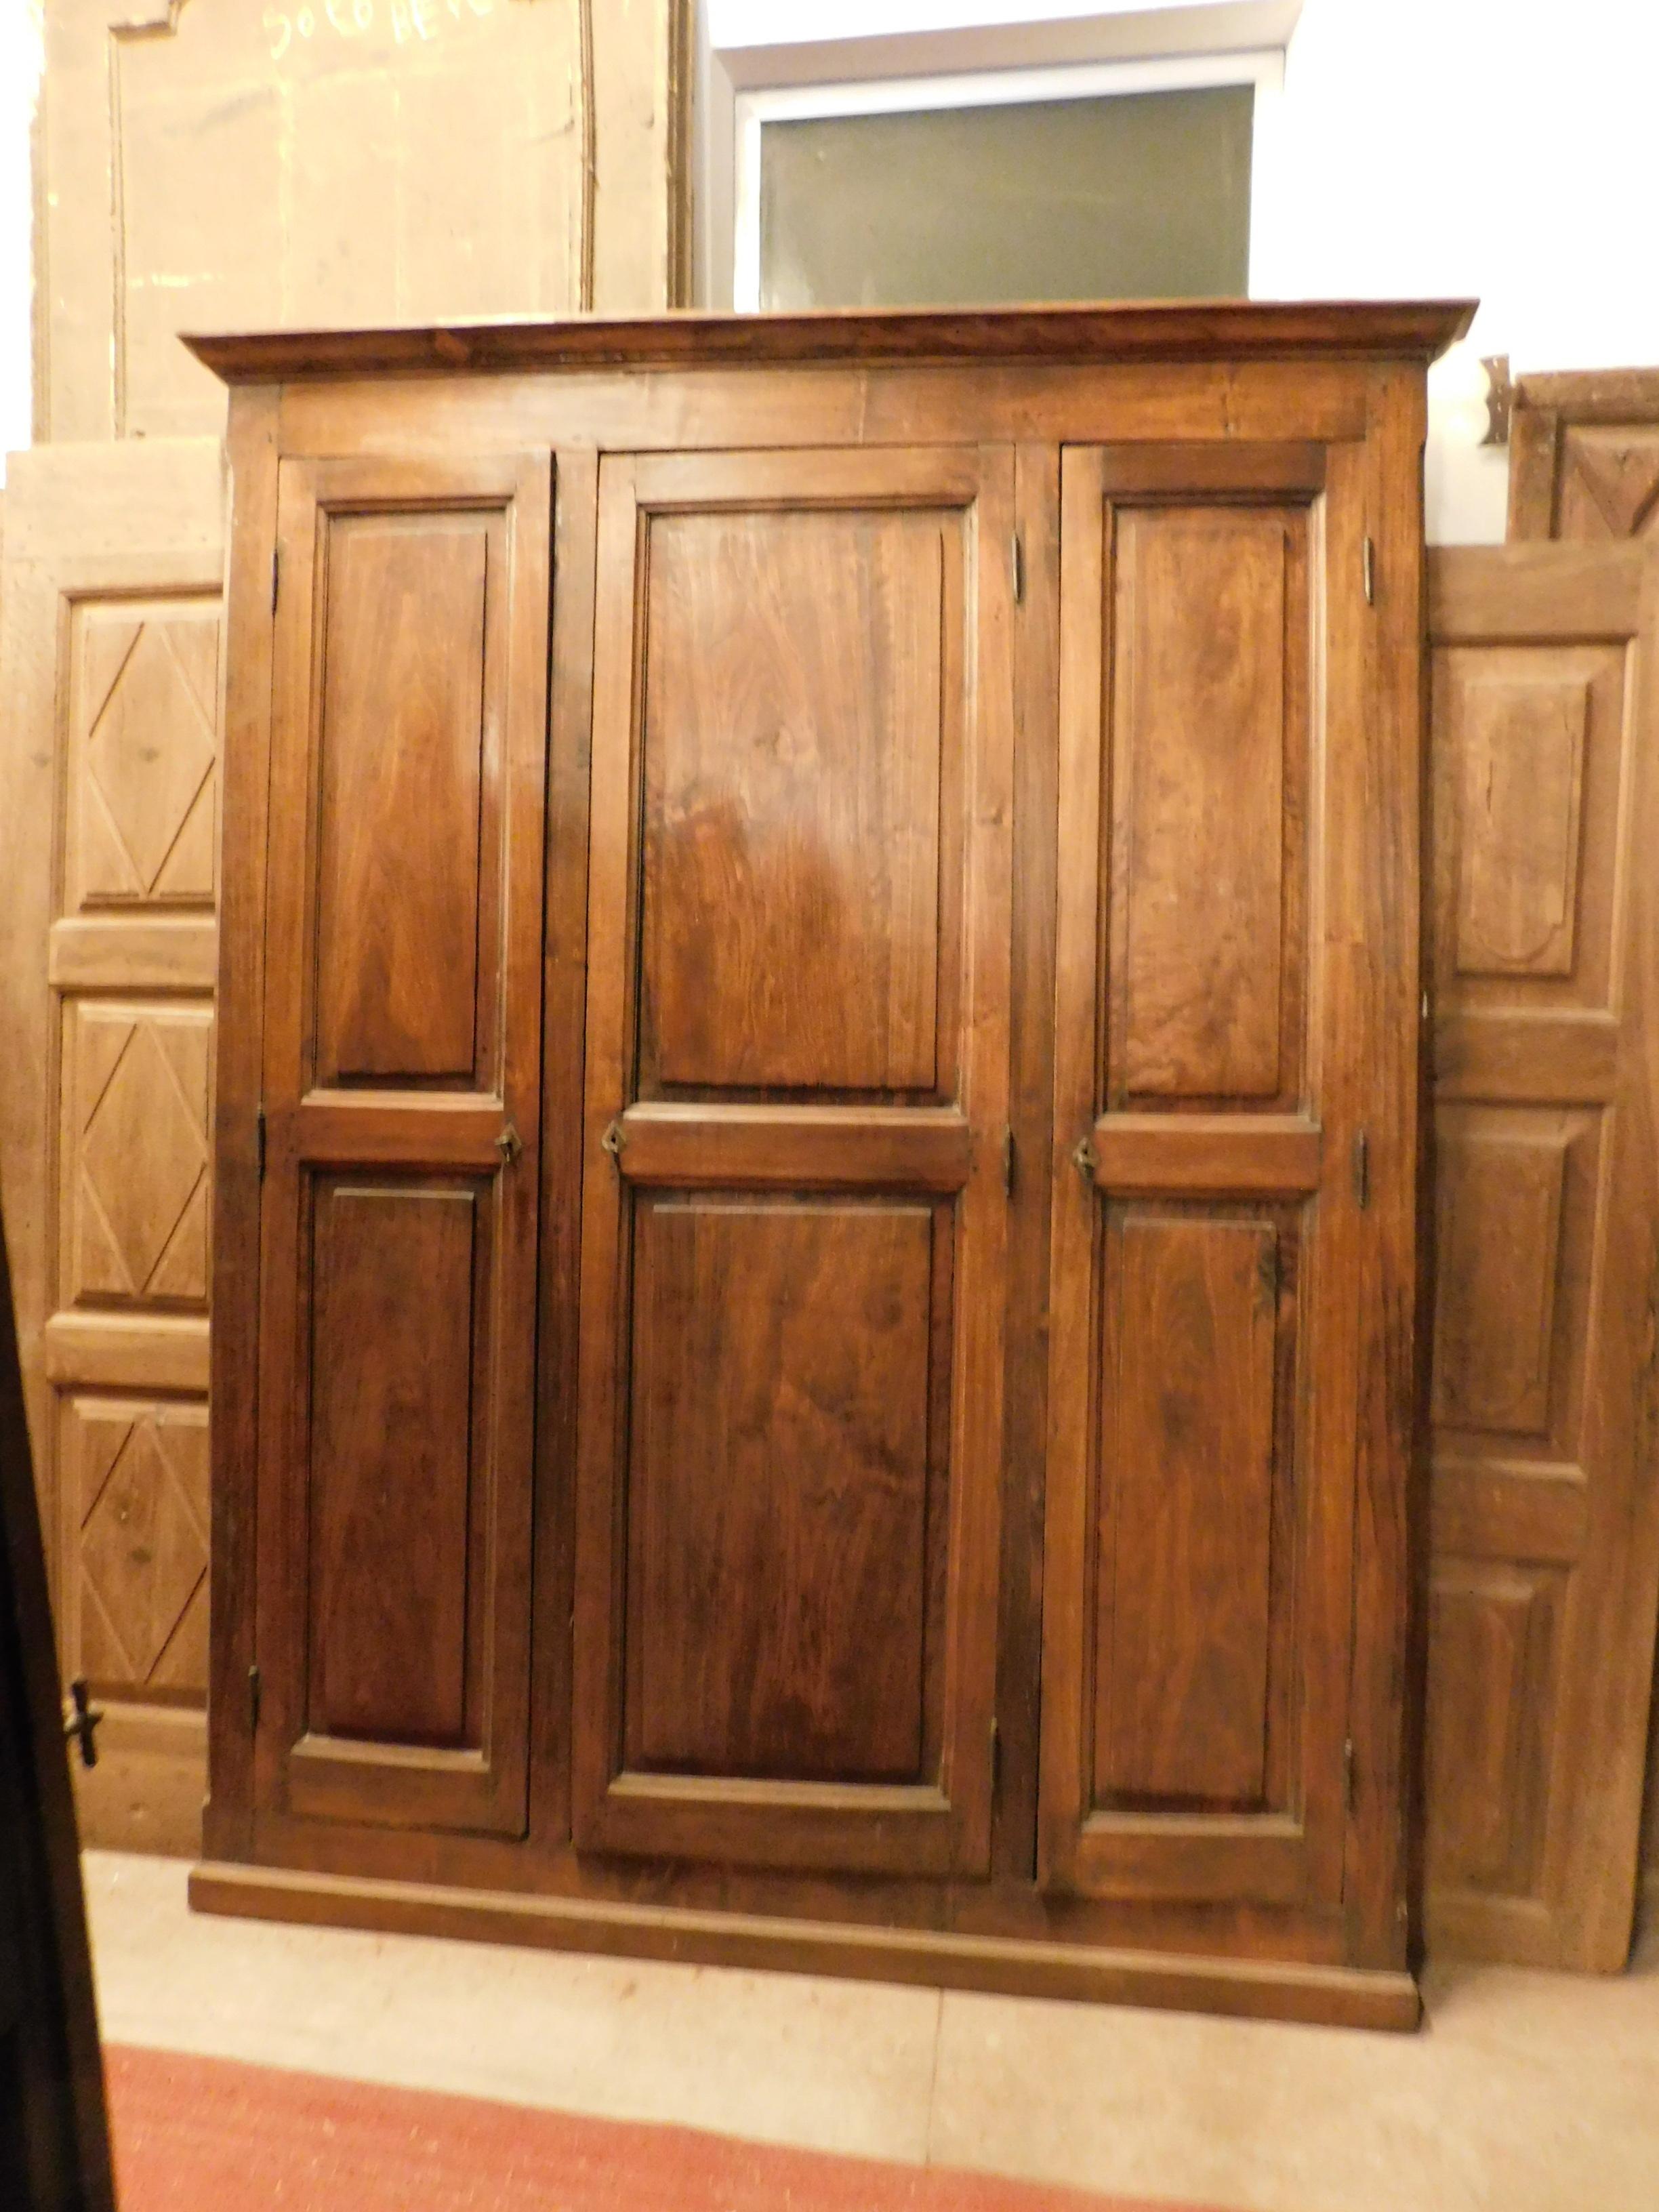 Antiker Schrank, Plakat, Einbauschrank, handgefertigt und handgeschnitzt aus Pappelholz, mit drei Türen mit Originalrahmen, handgefertigt im 19. Jahrhundert in Italien.
Ideal für die Herstellung eines in die Wand eingebauten Kleiderschranks, er hat